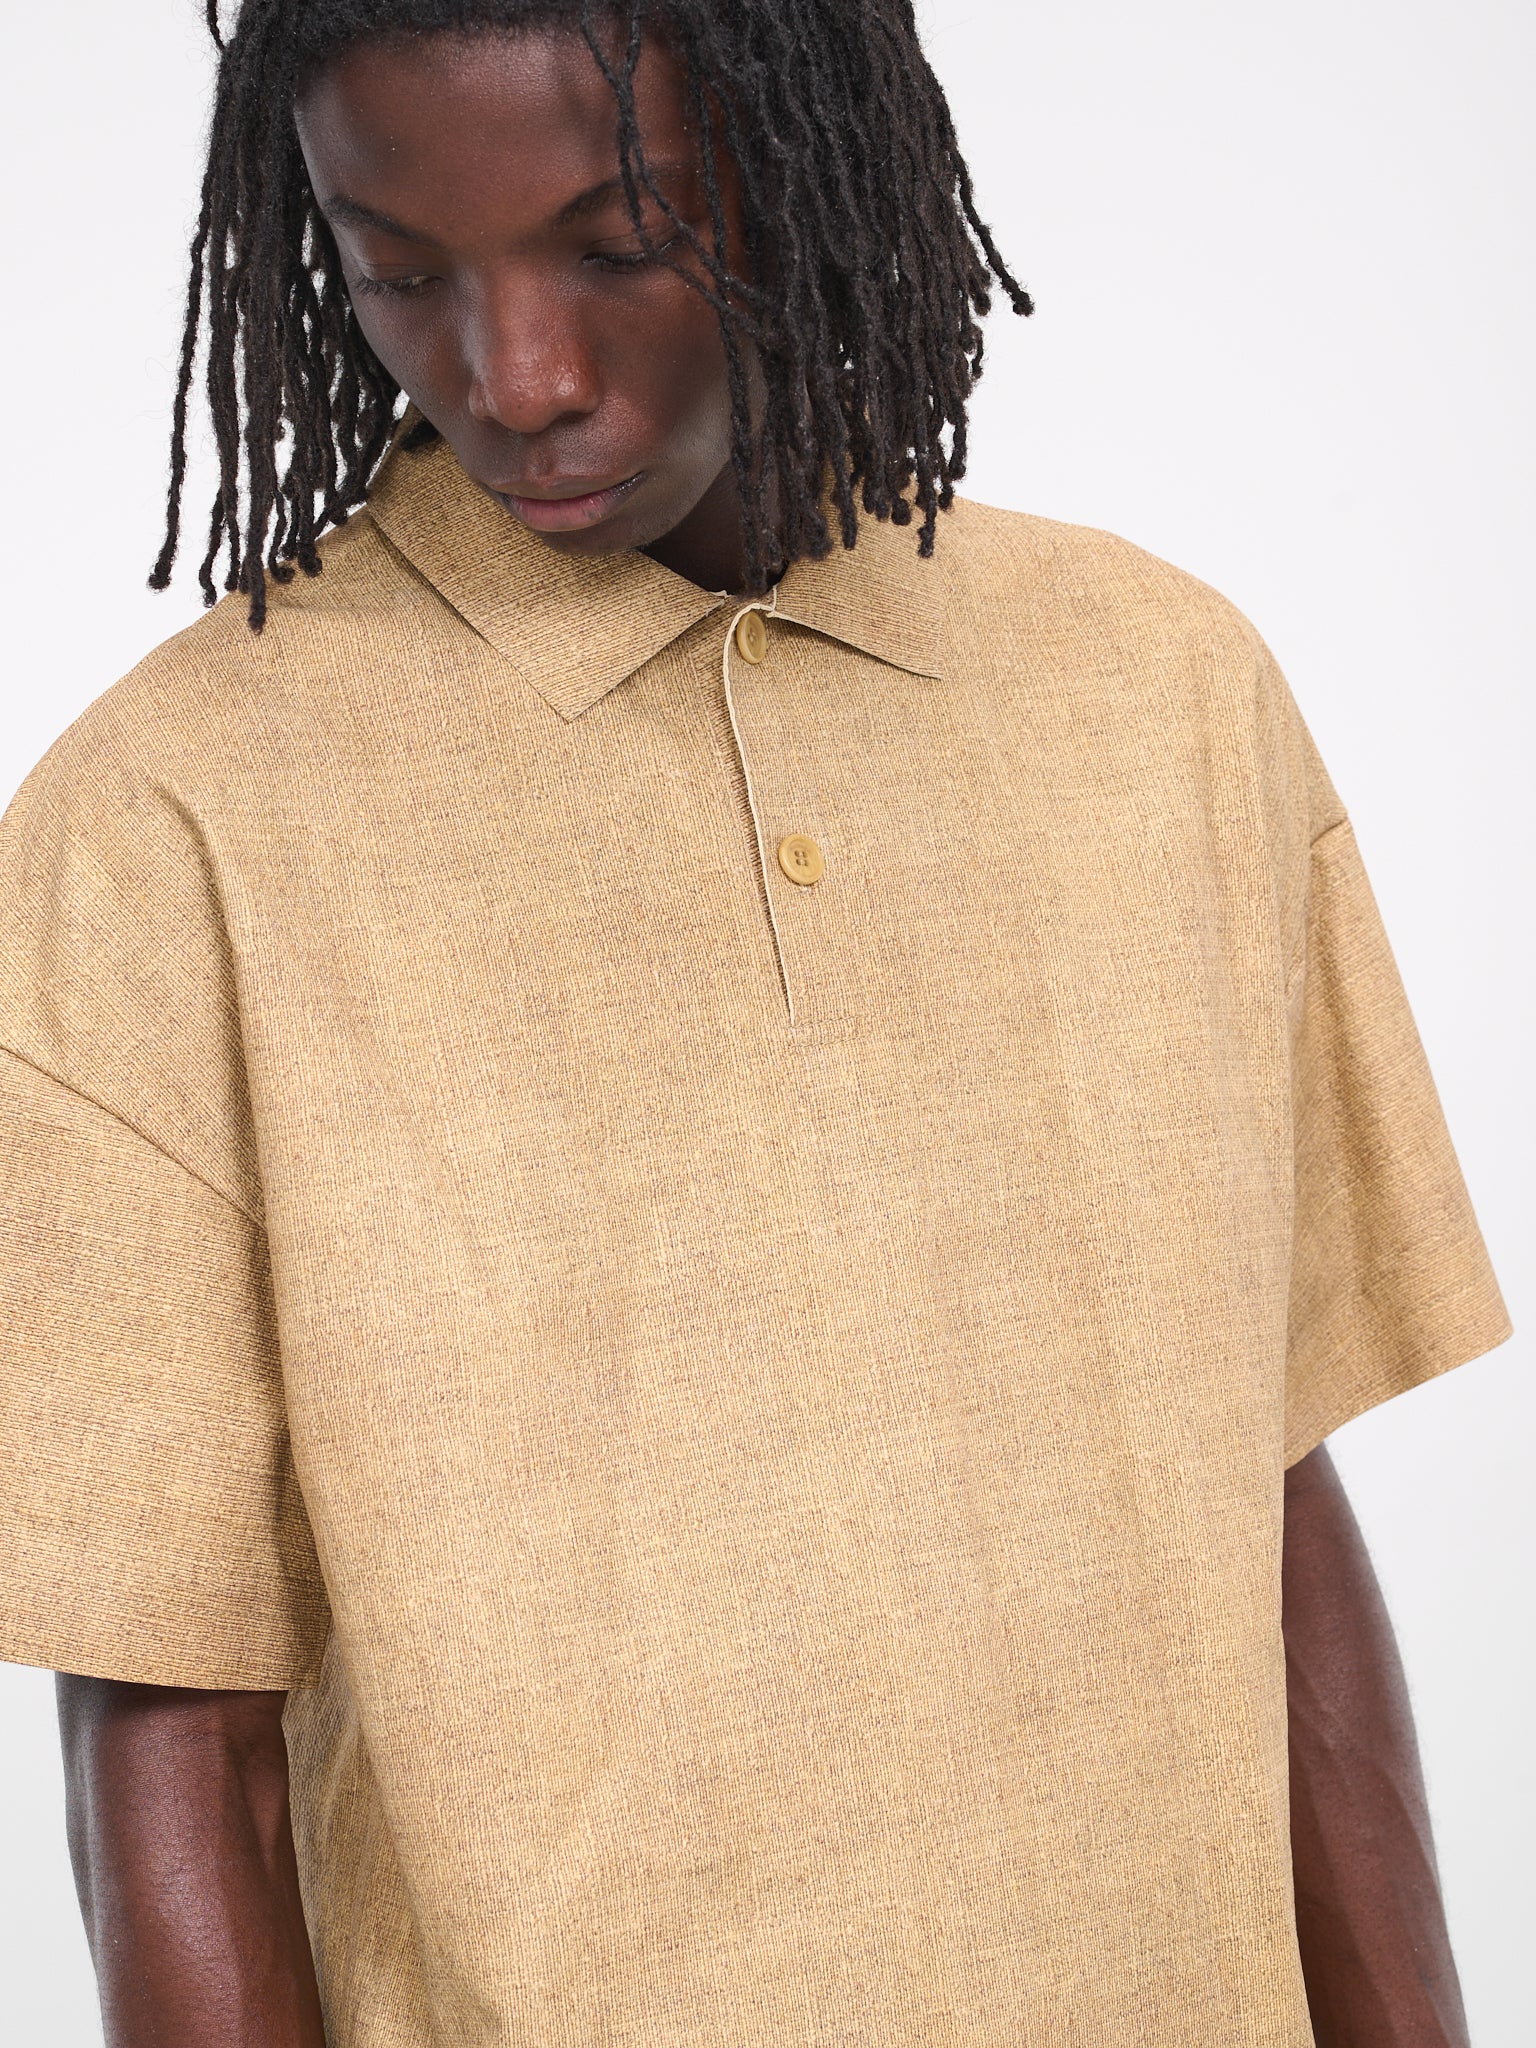 Leather Polo Shirt (LT0050-LT0082-150-SAND)